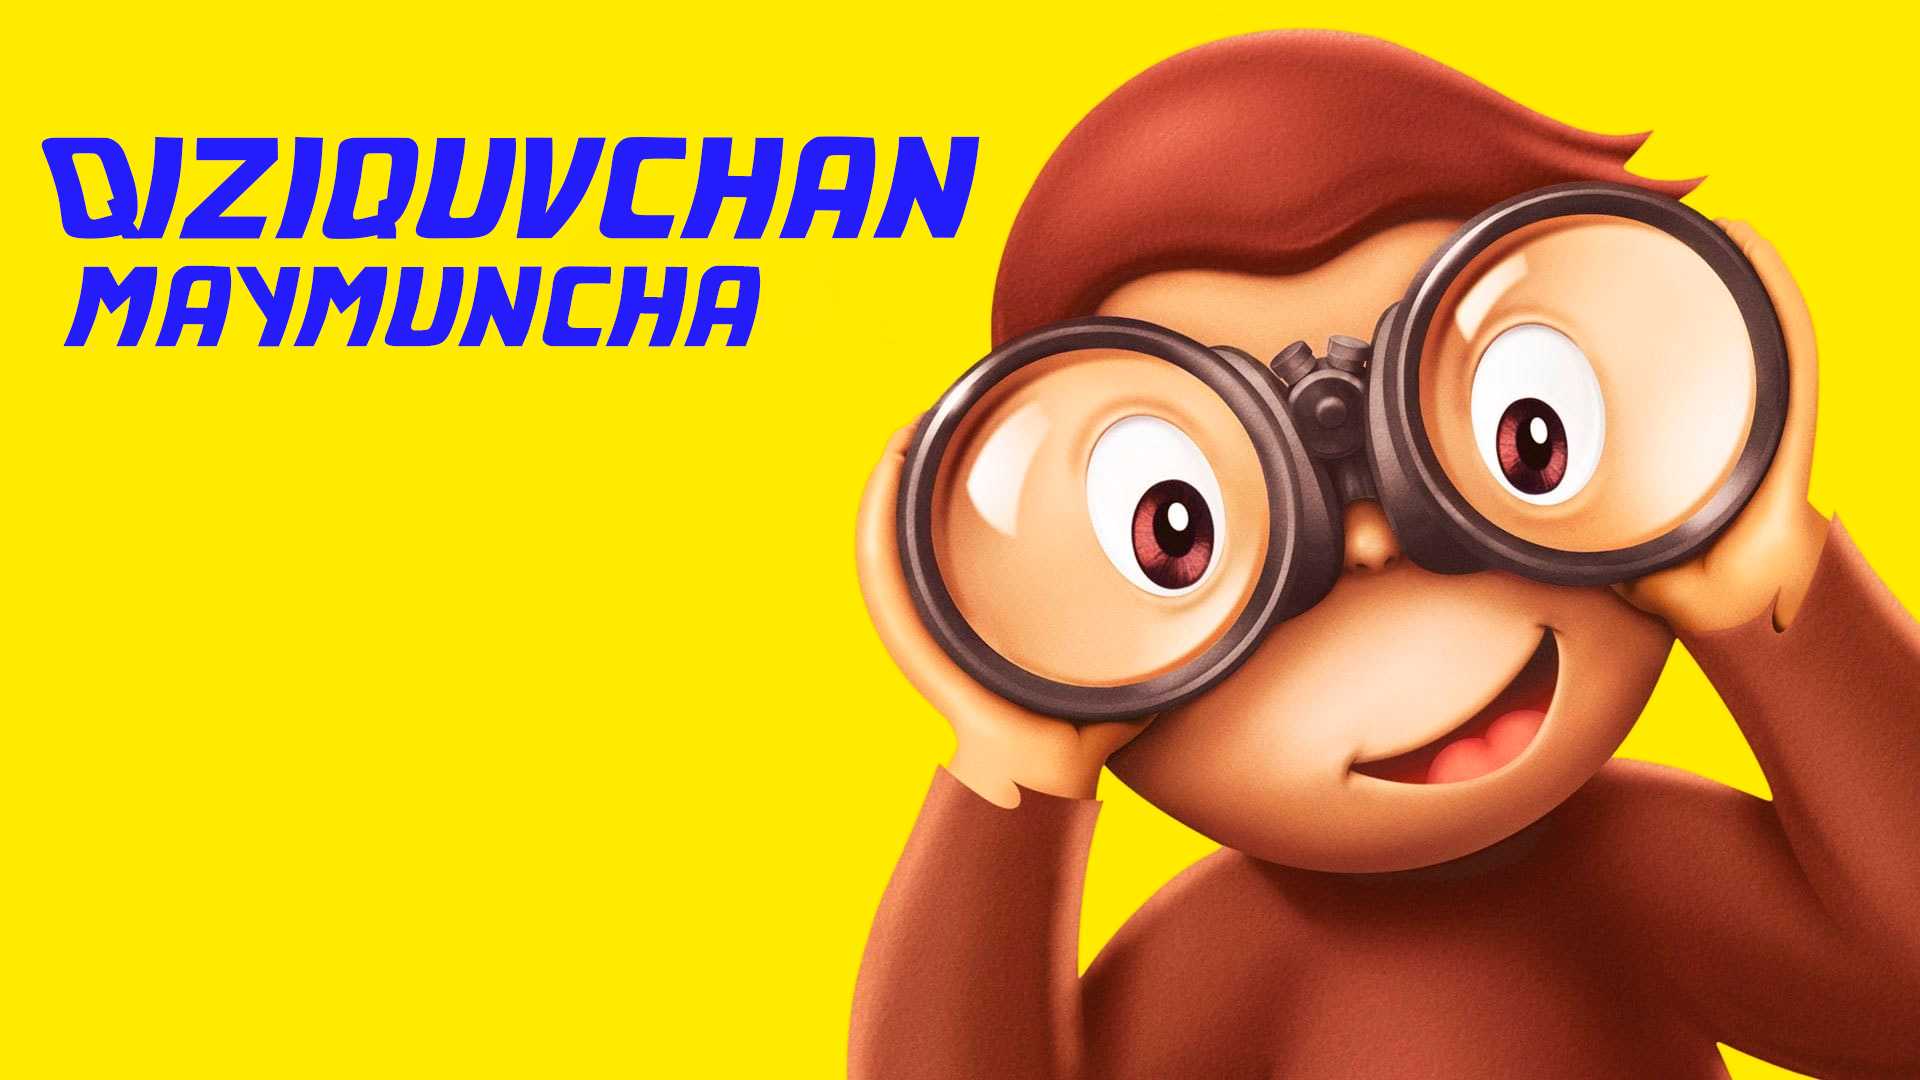 Qiziquvchan maymuncha